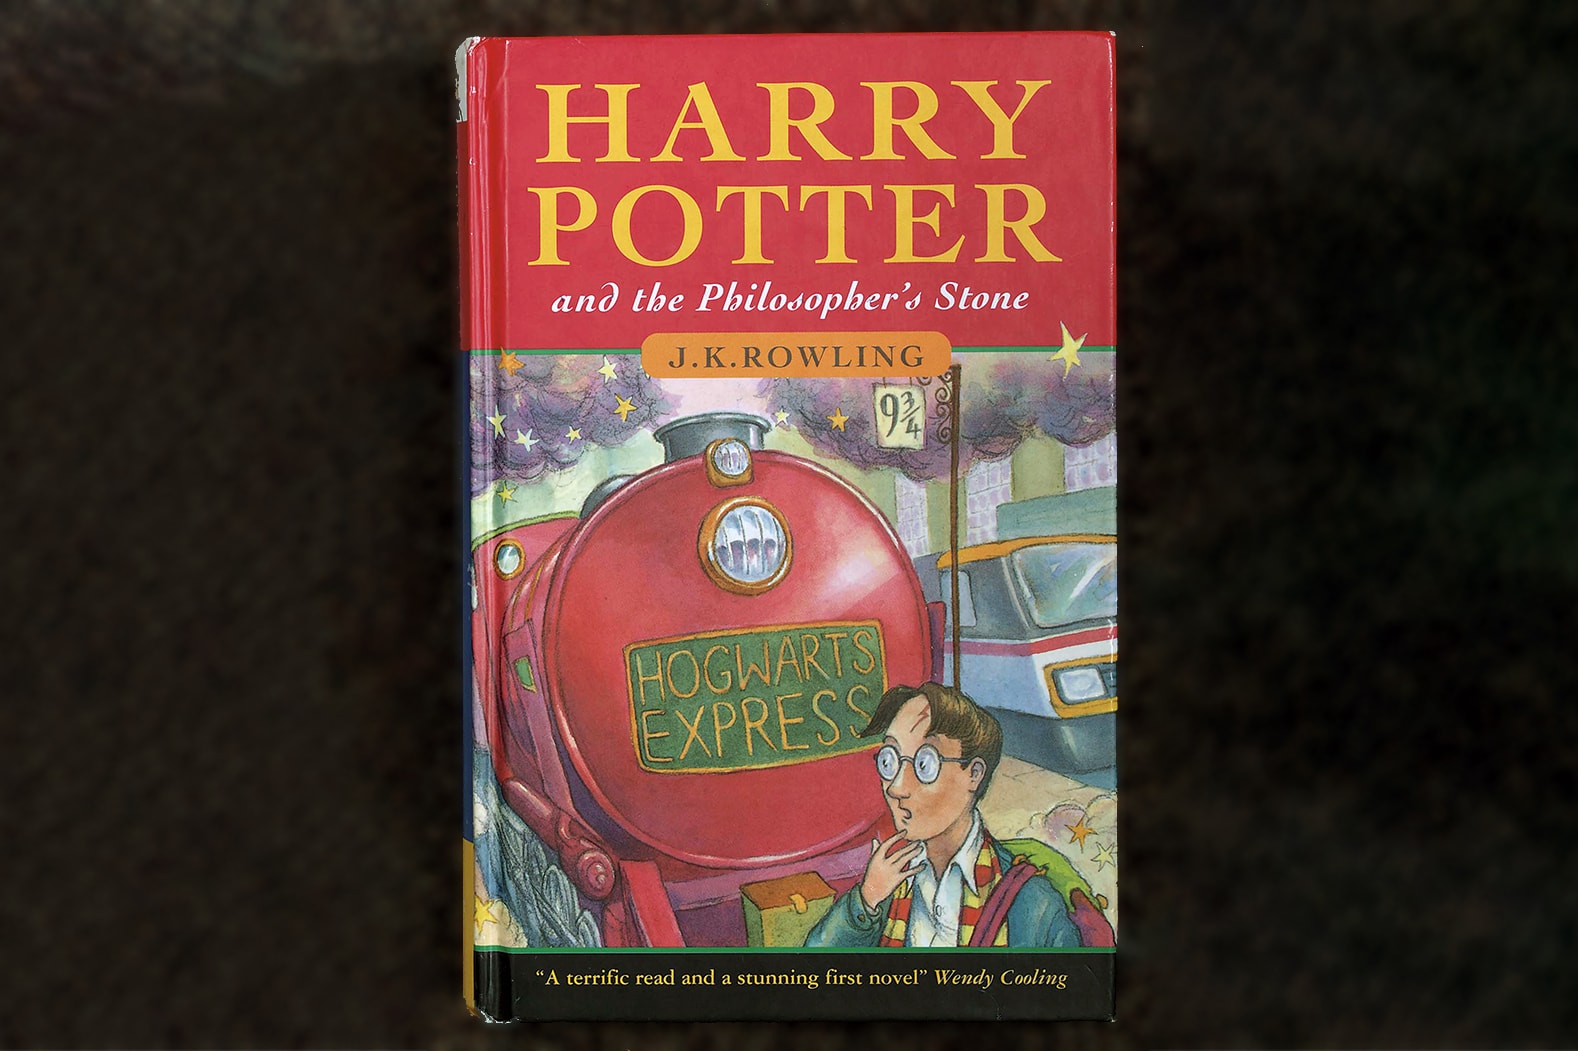 진짜 해리 포터가 '해리 포터' 희귀 초판본을 판매하게 된 사연은? 마법사의 돌, 경매